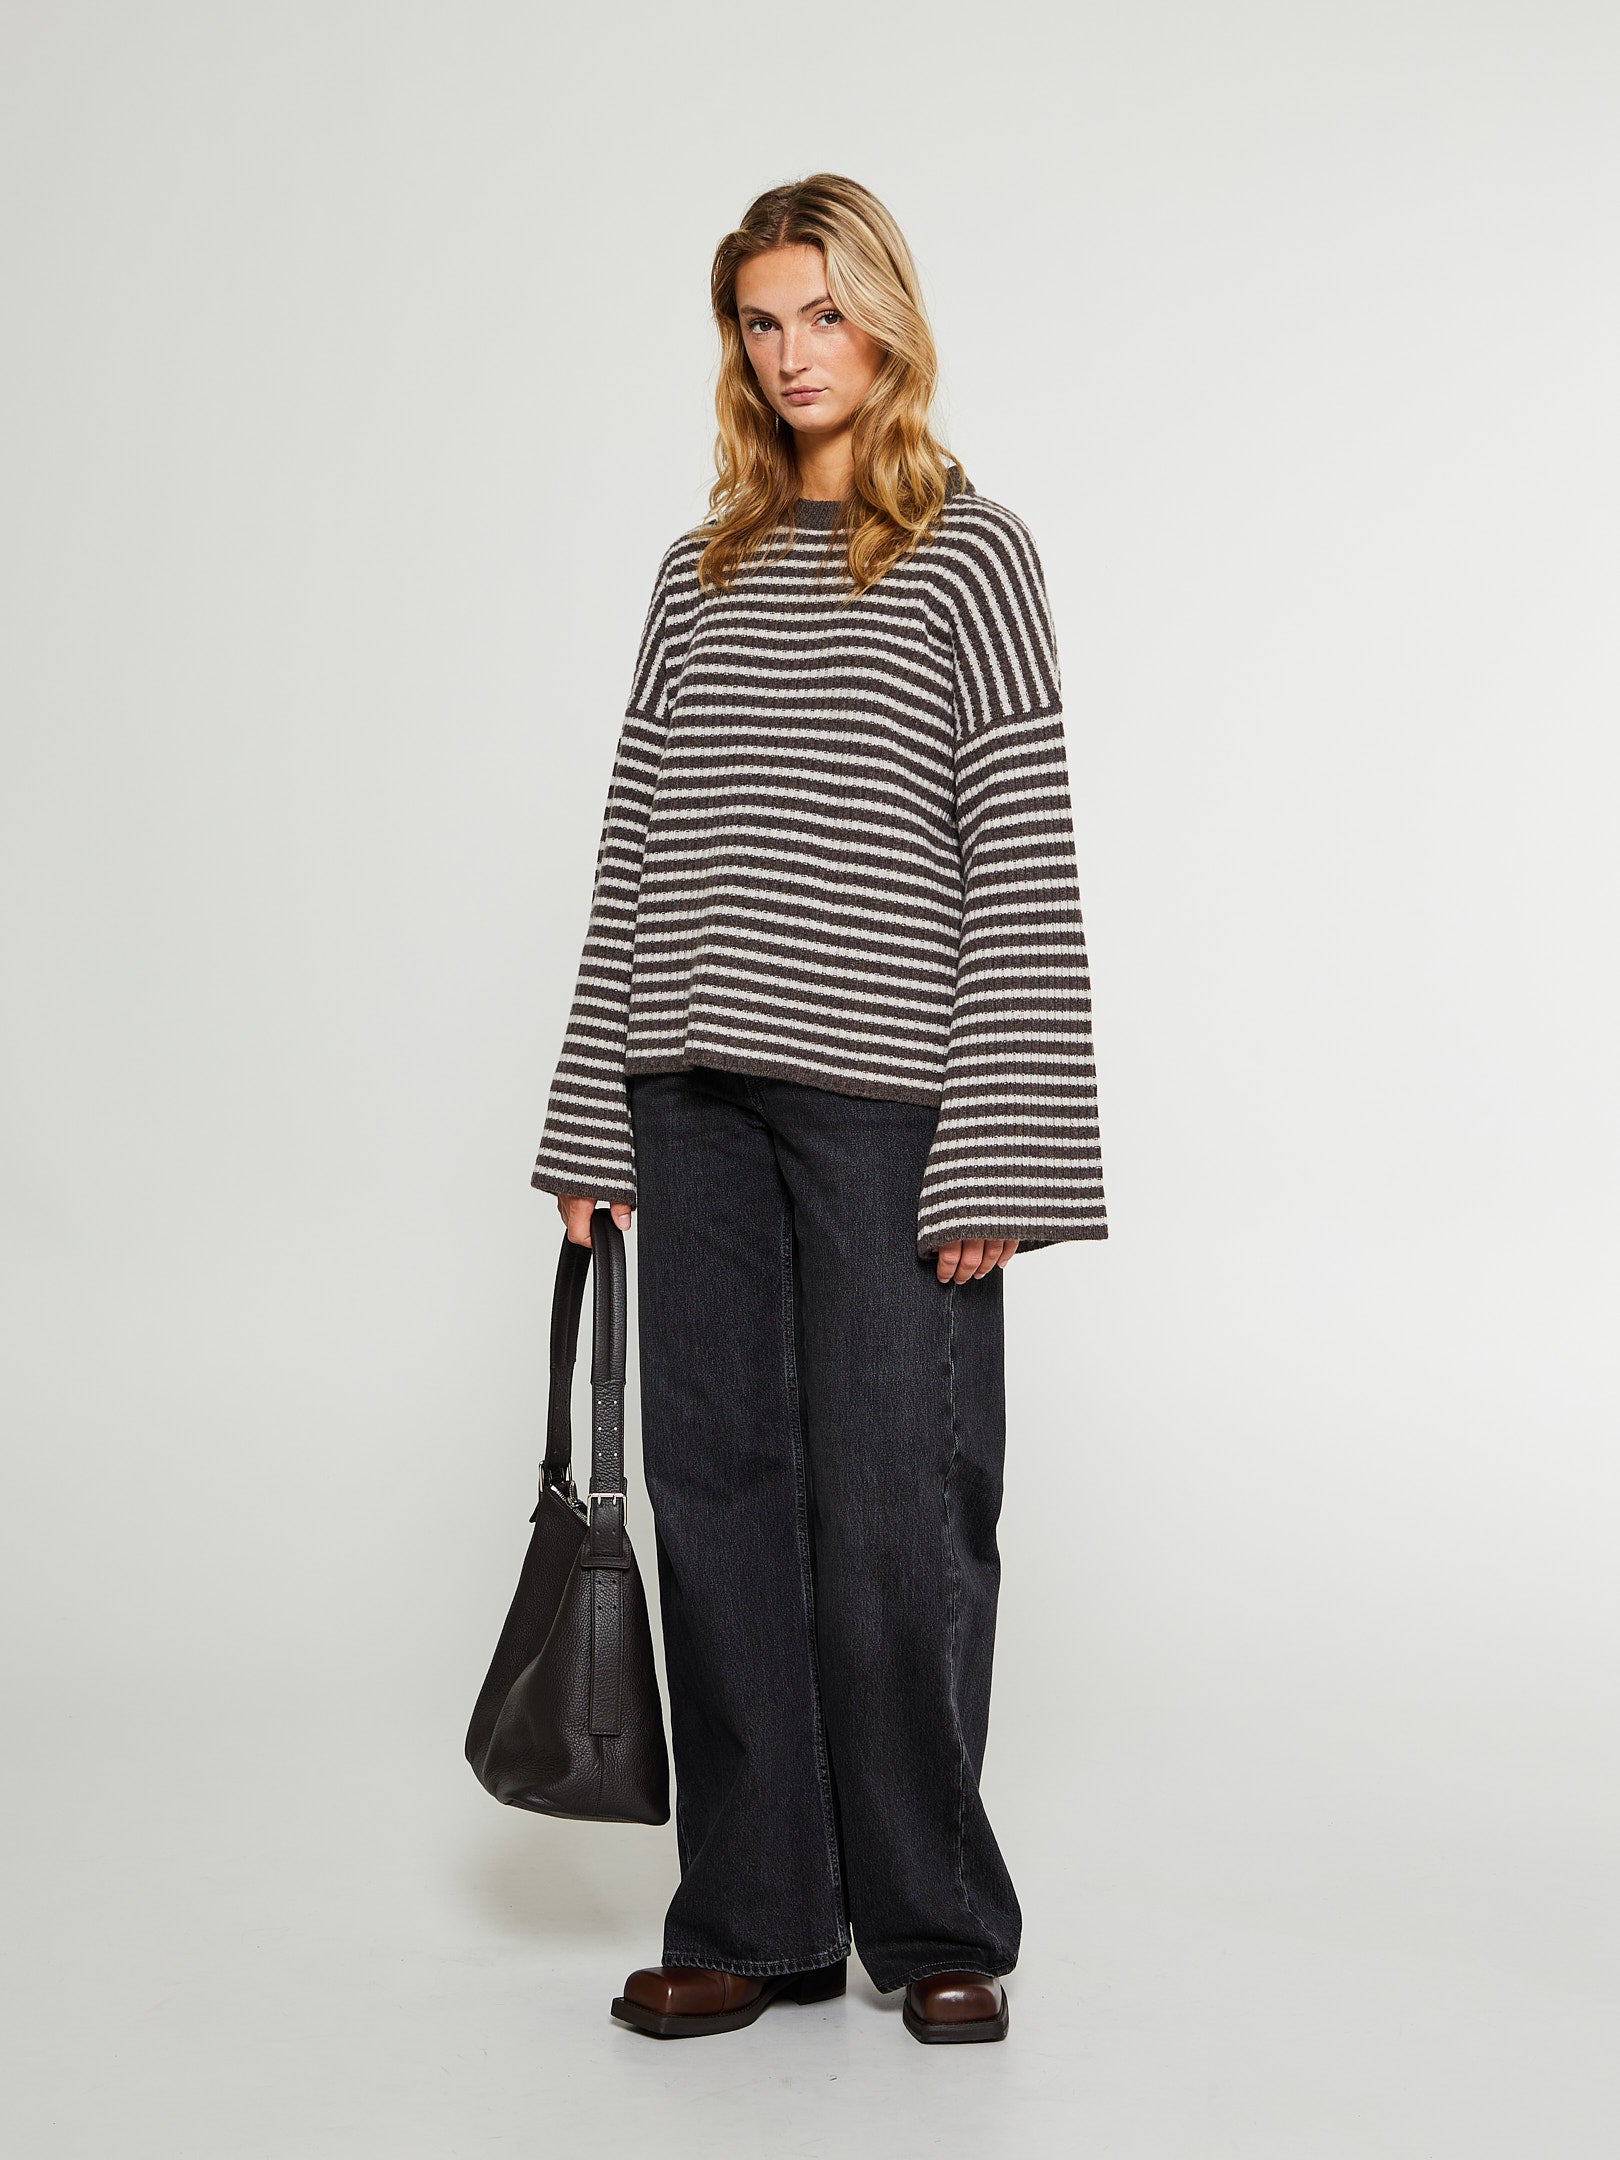 Ellen Cashmere Sweater in Brown Stripes